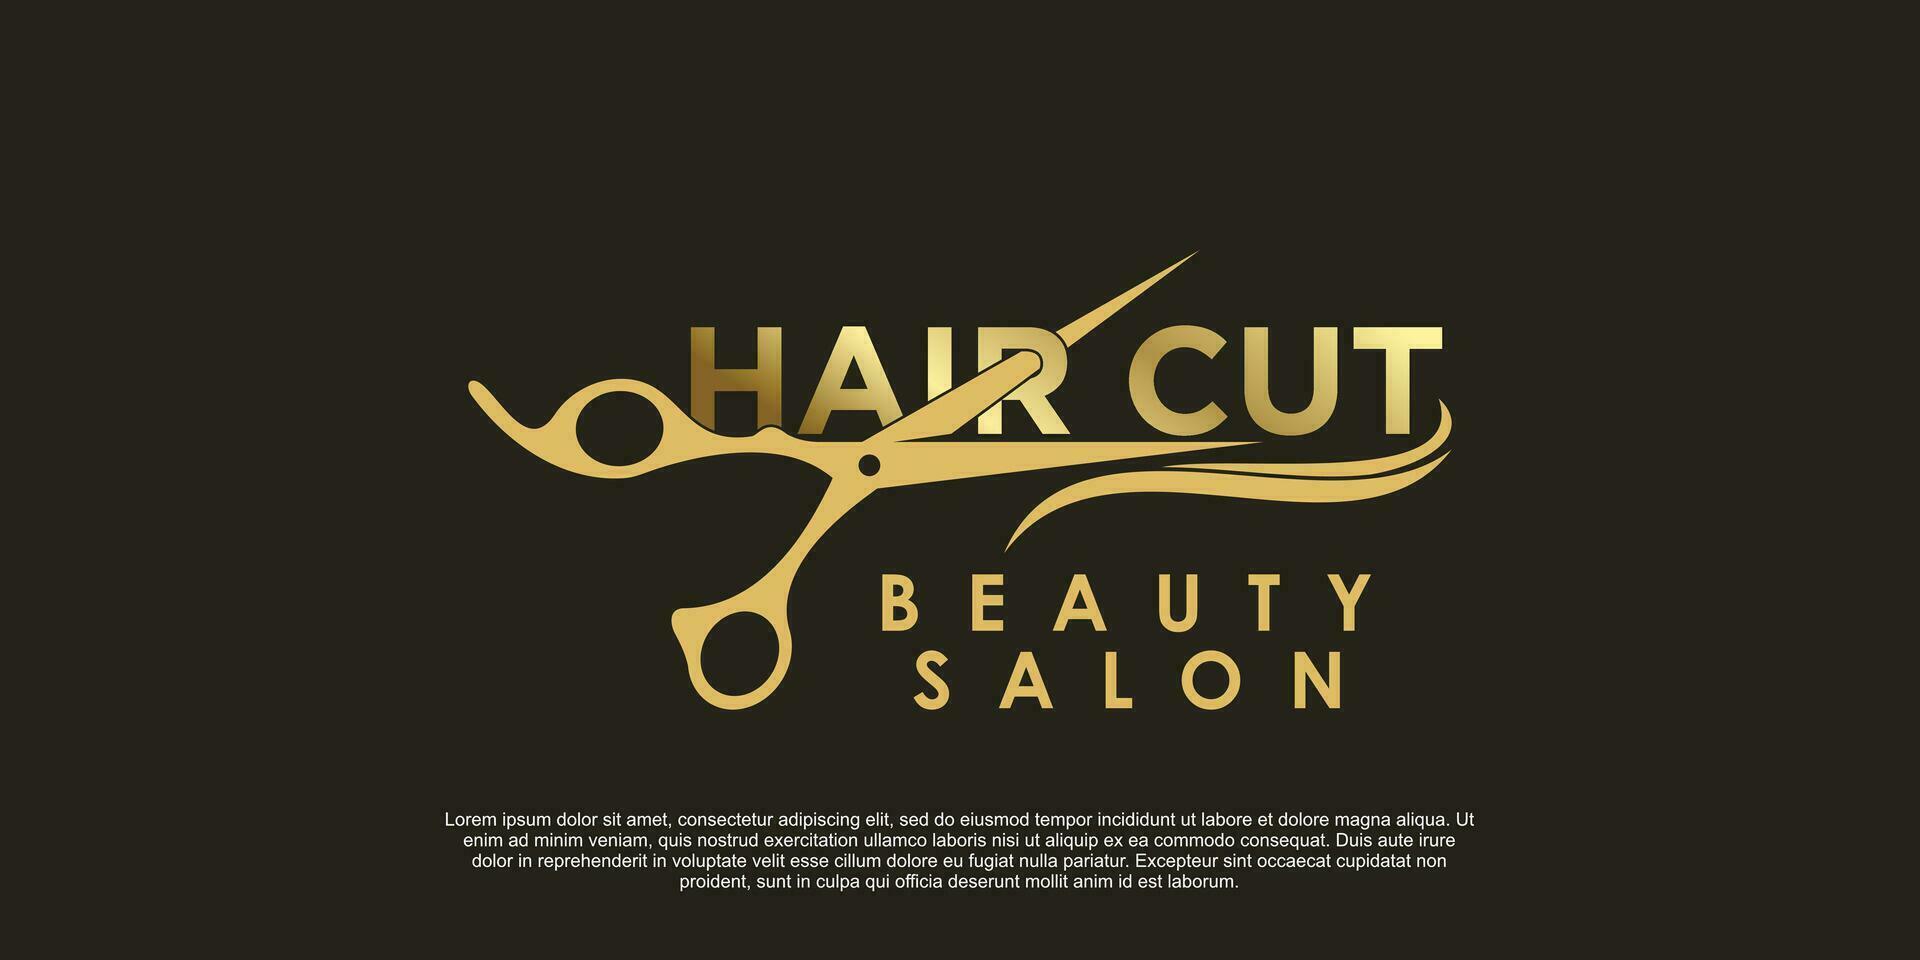 beauty salon hair cut logo design creative concept vector